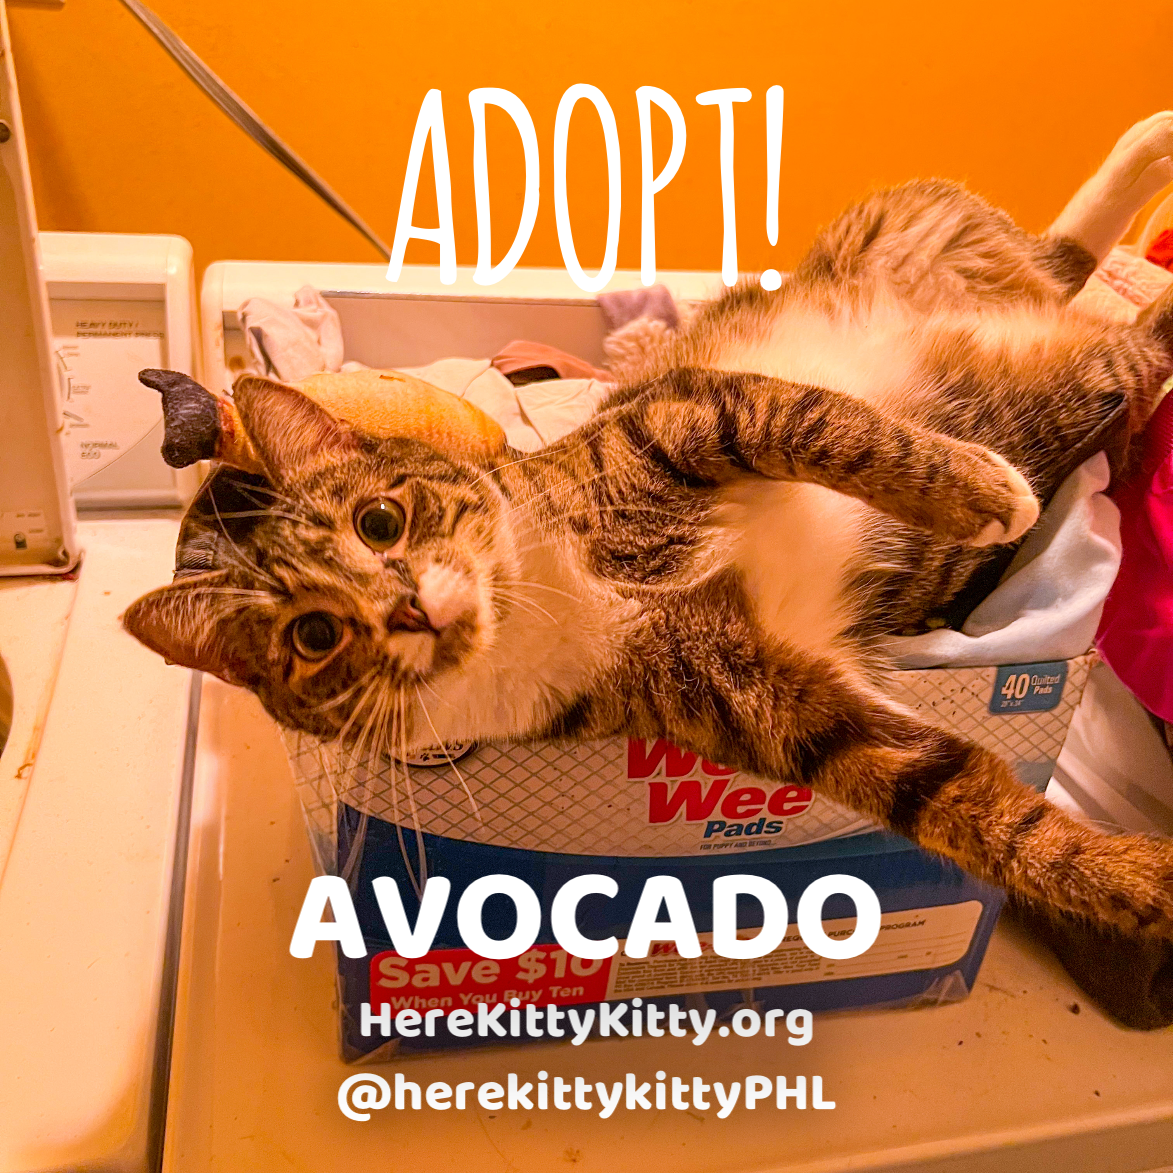 adoptable Cat in Philadelphia, PA named Avocado